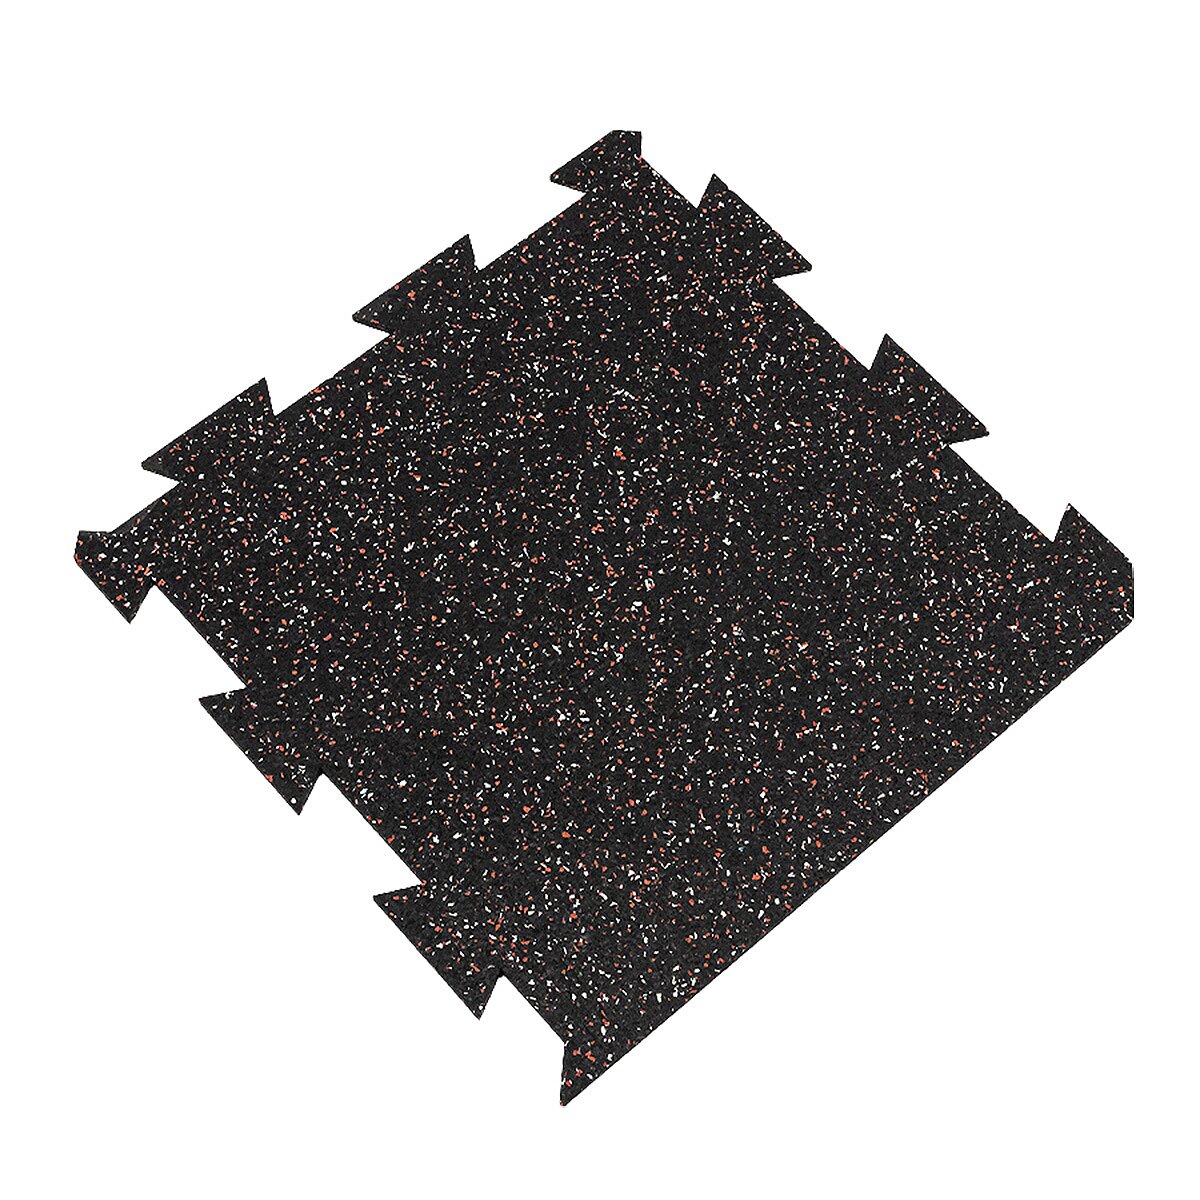 Černo-bílo-červená gumová modulová puzzle dlažba FLOMA FitFlo SF1050 - délka 50 cm, šířka 50 cm, výška 0,8 cm